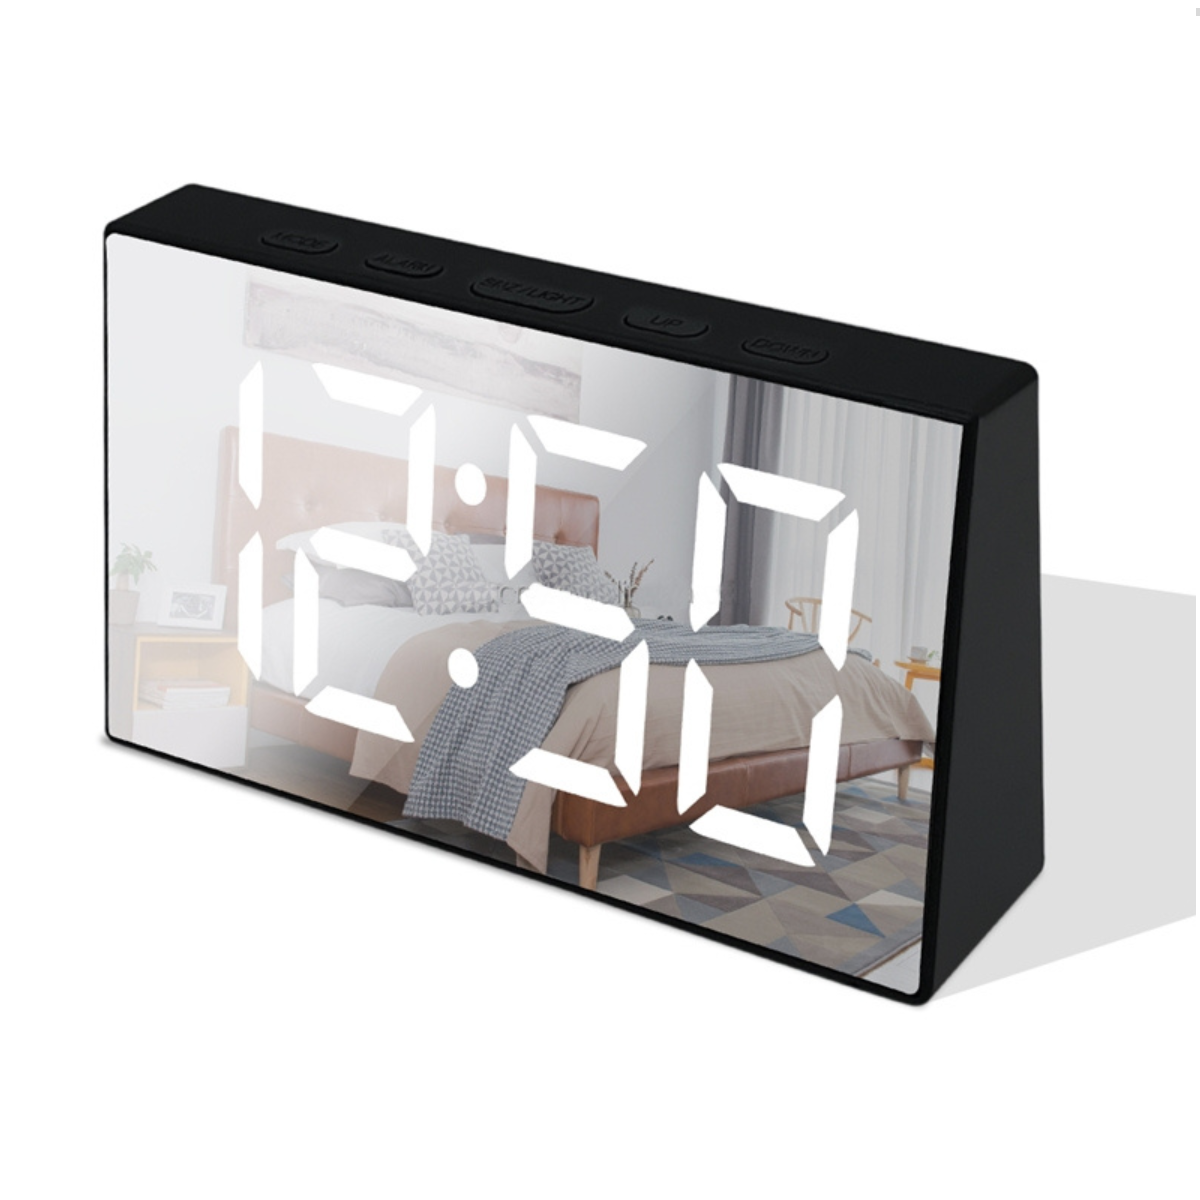 Relógio Led Digital de Mesa com Espelho